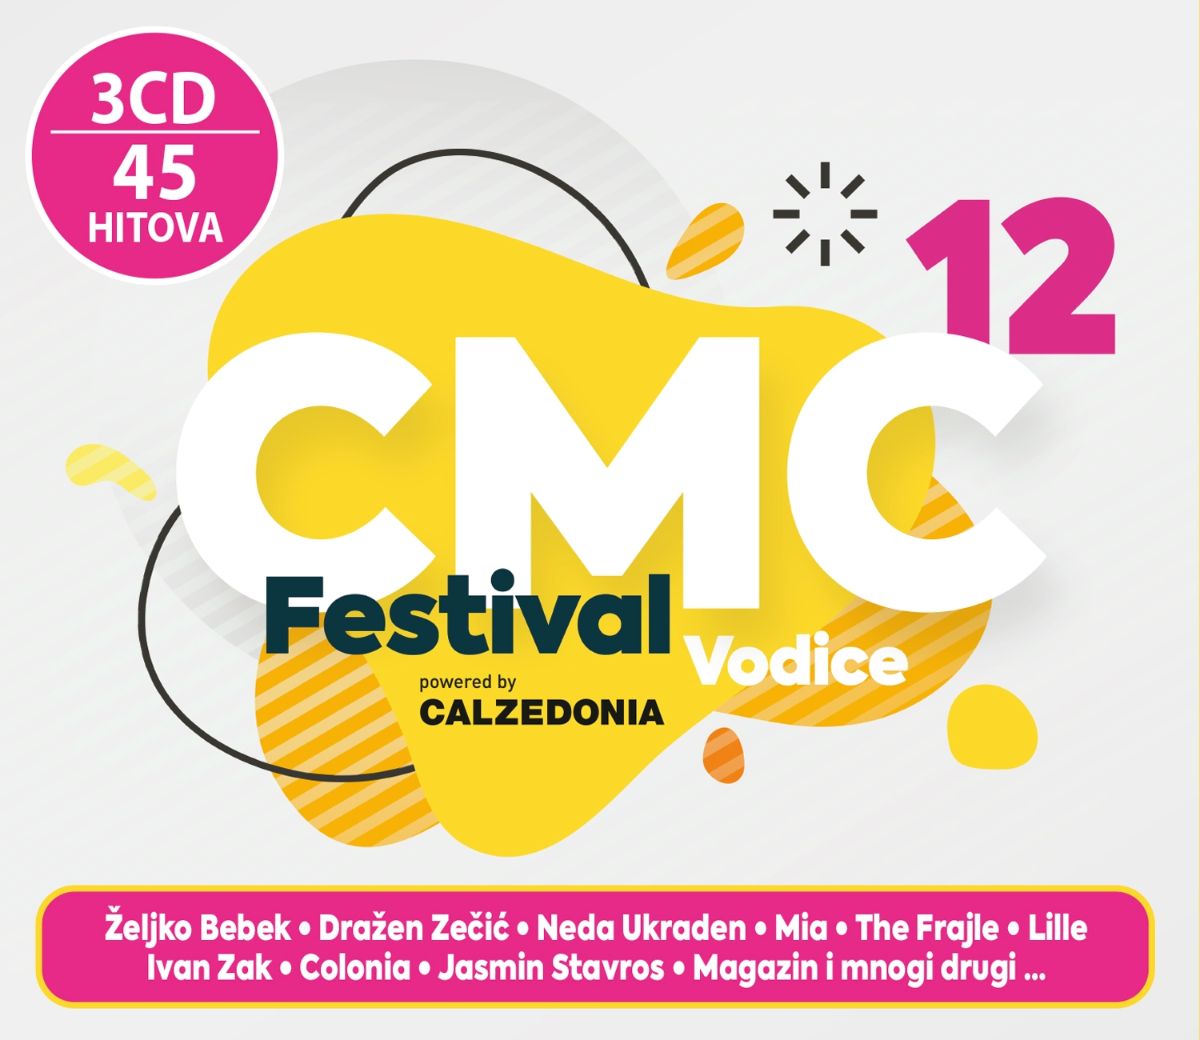 U prodaji trostruki CD sa svim pjesmama CMC festivala Vodice 2020.